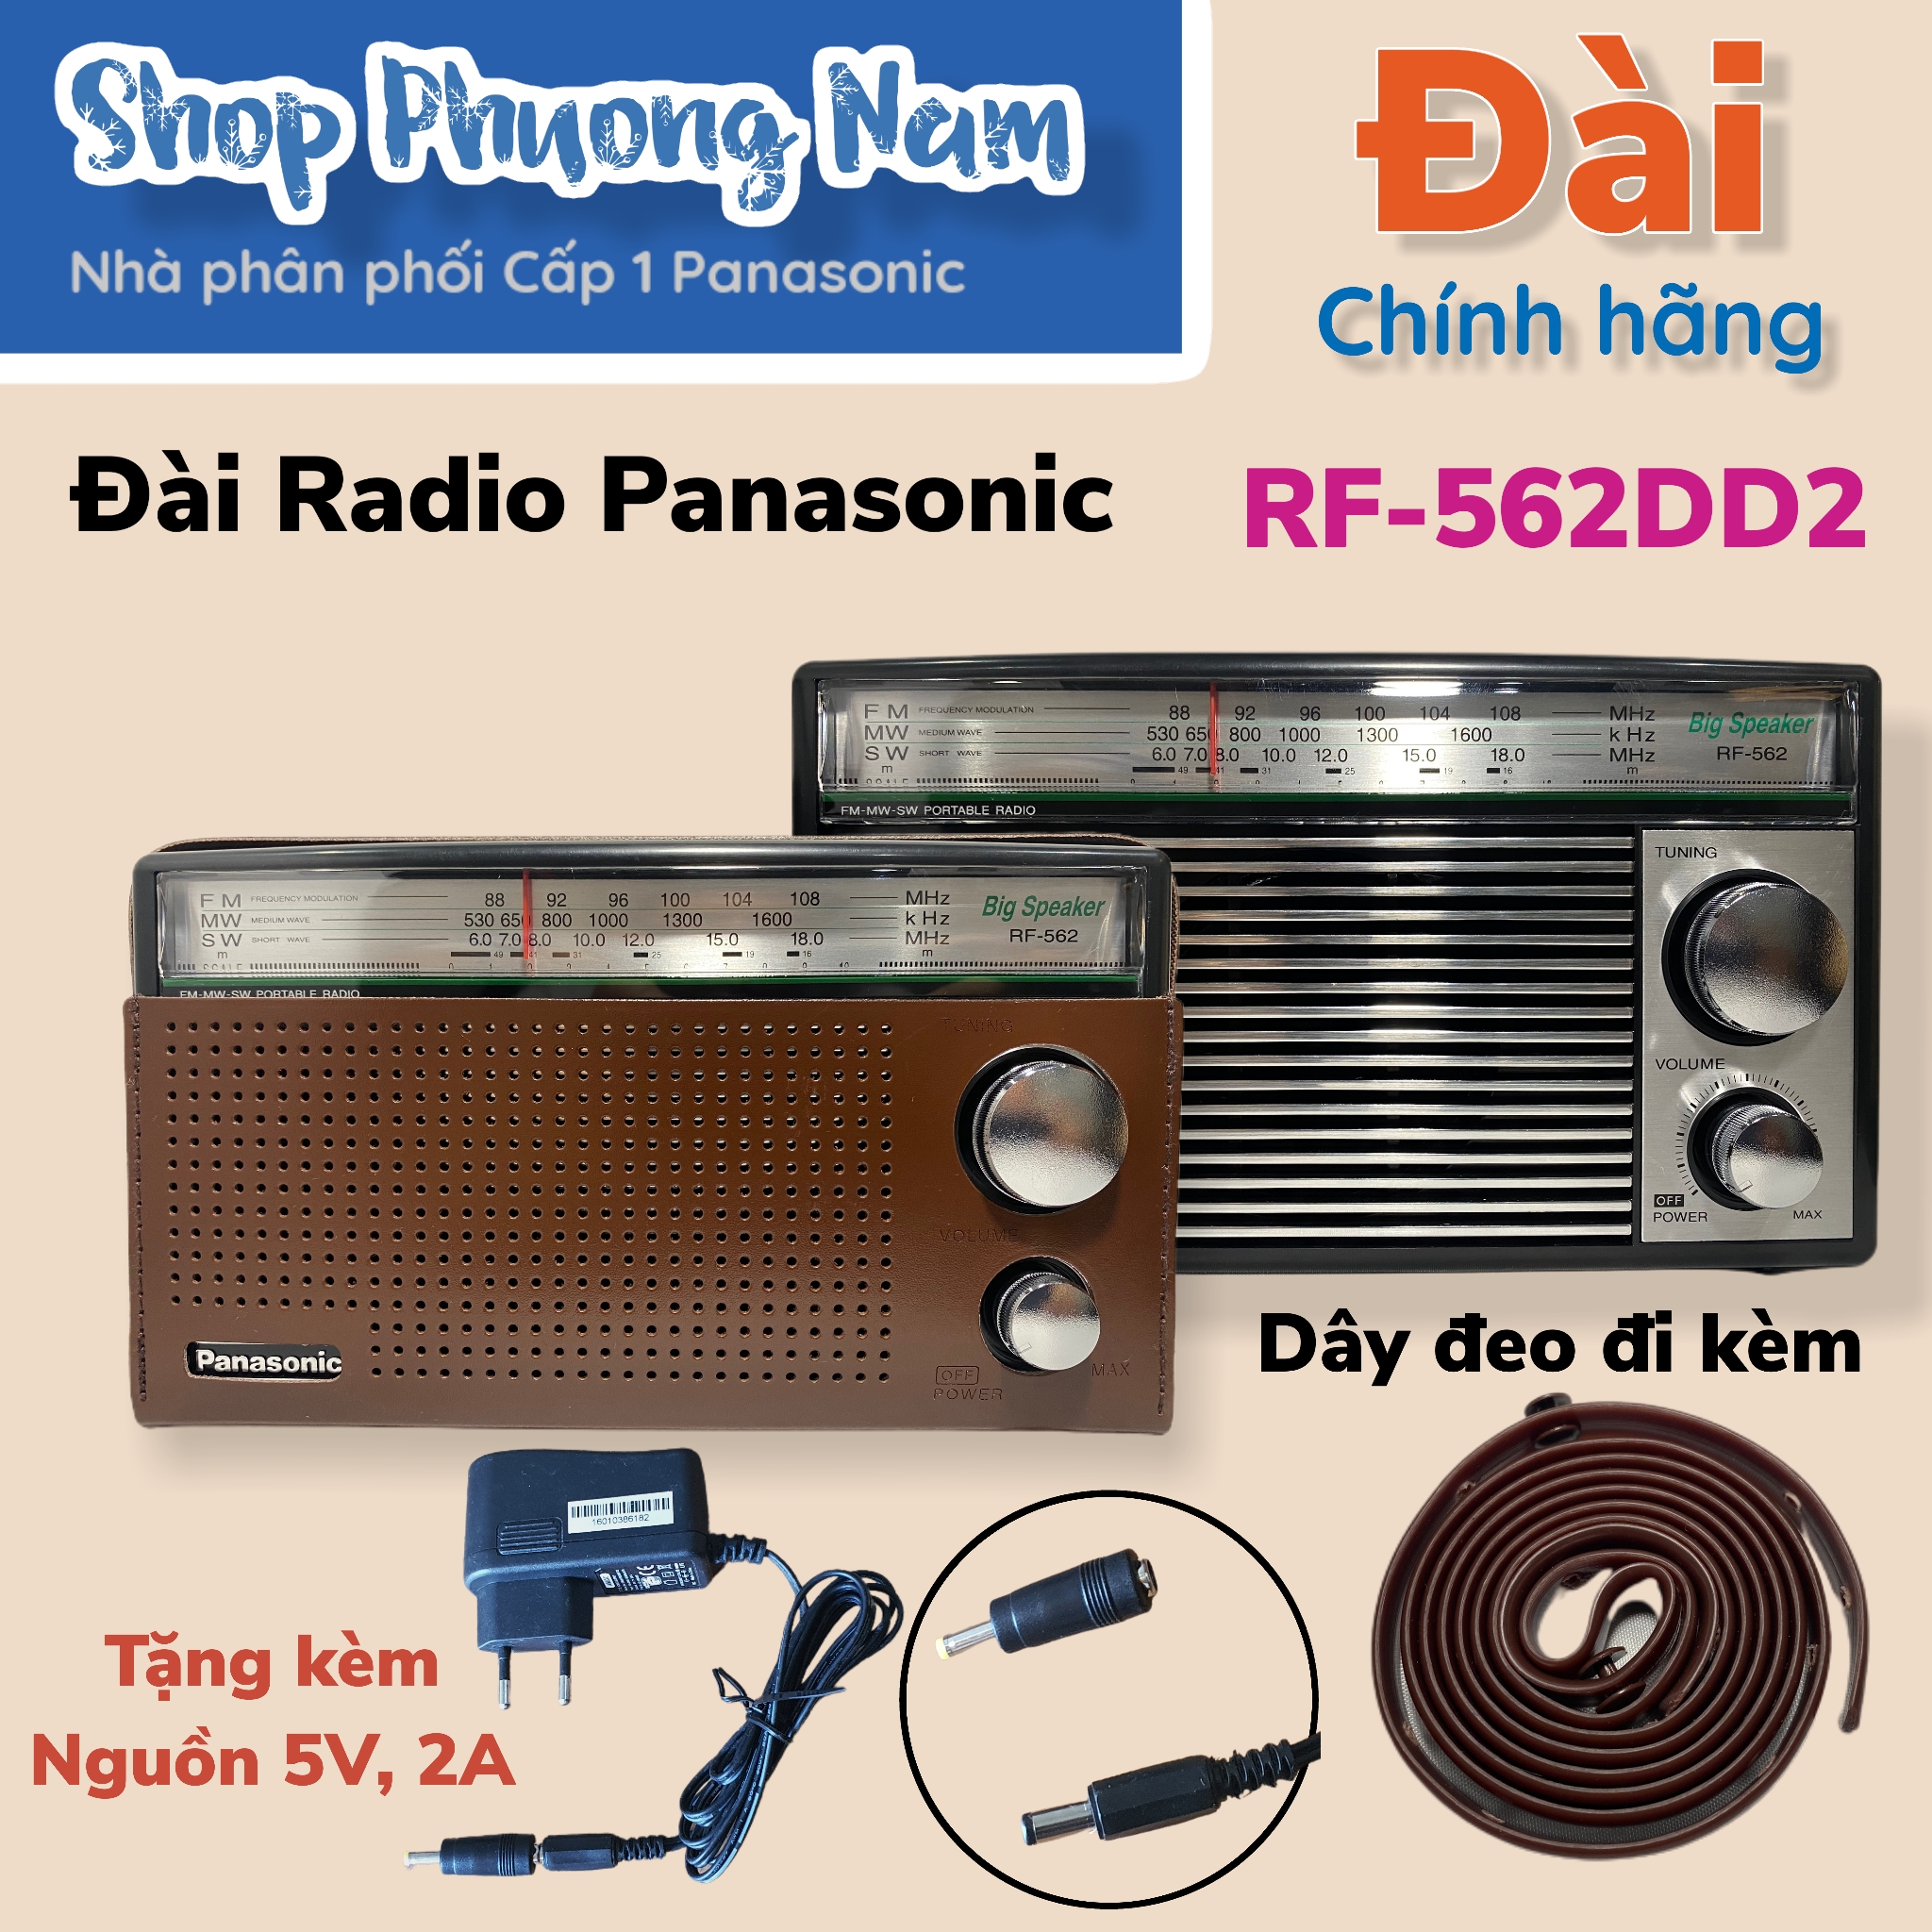 Hình ảnh Radio Panasonic RF-562DD (Hàng chính hãng)